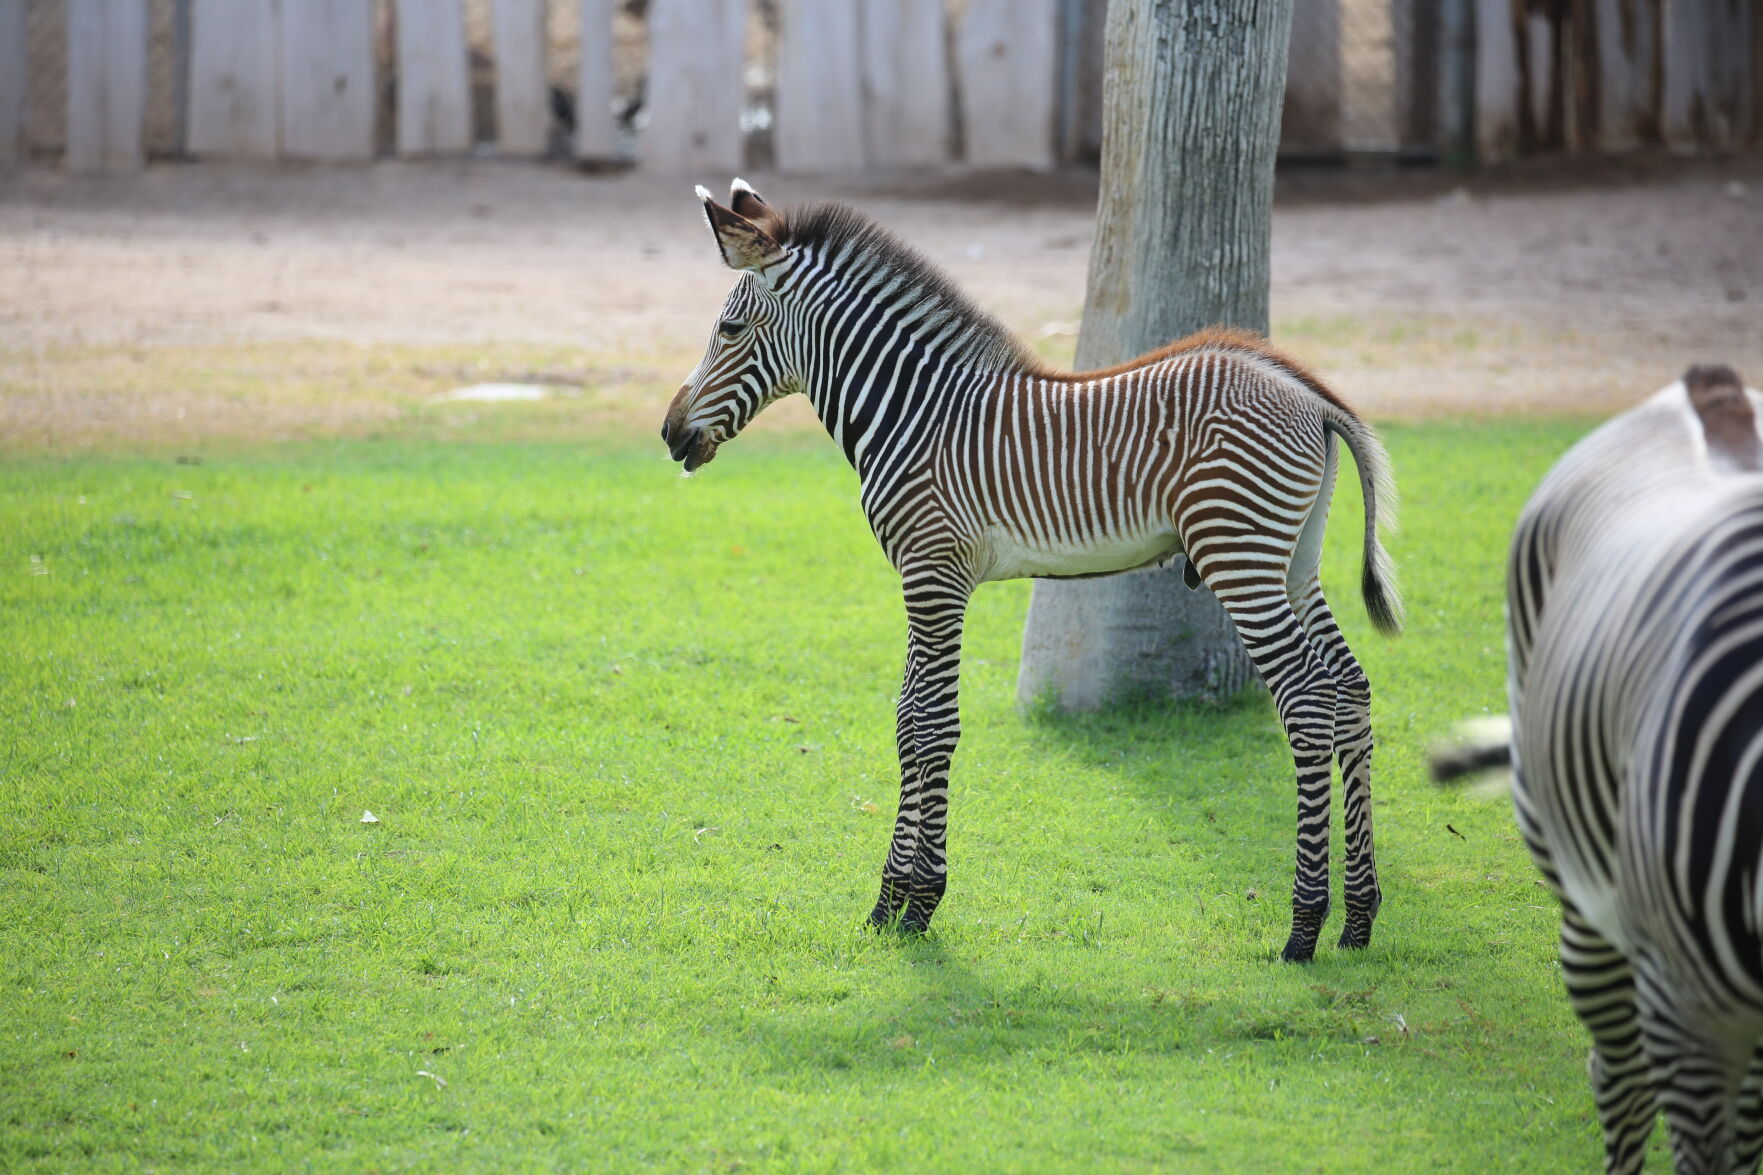 baby zebra animal kingdom lodge dies